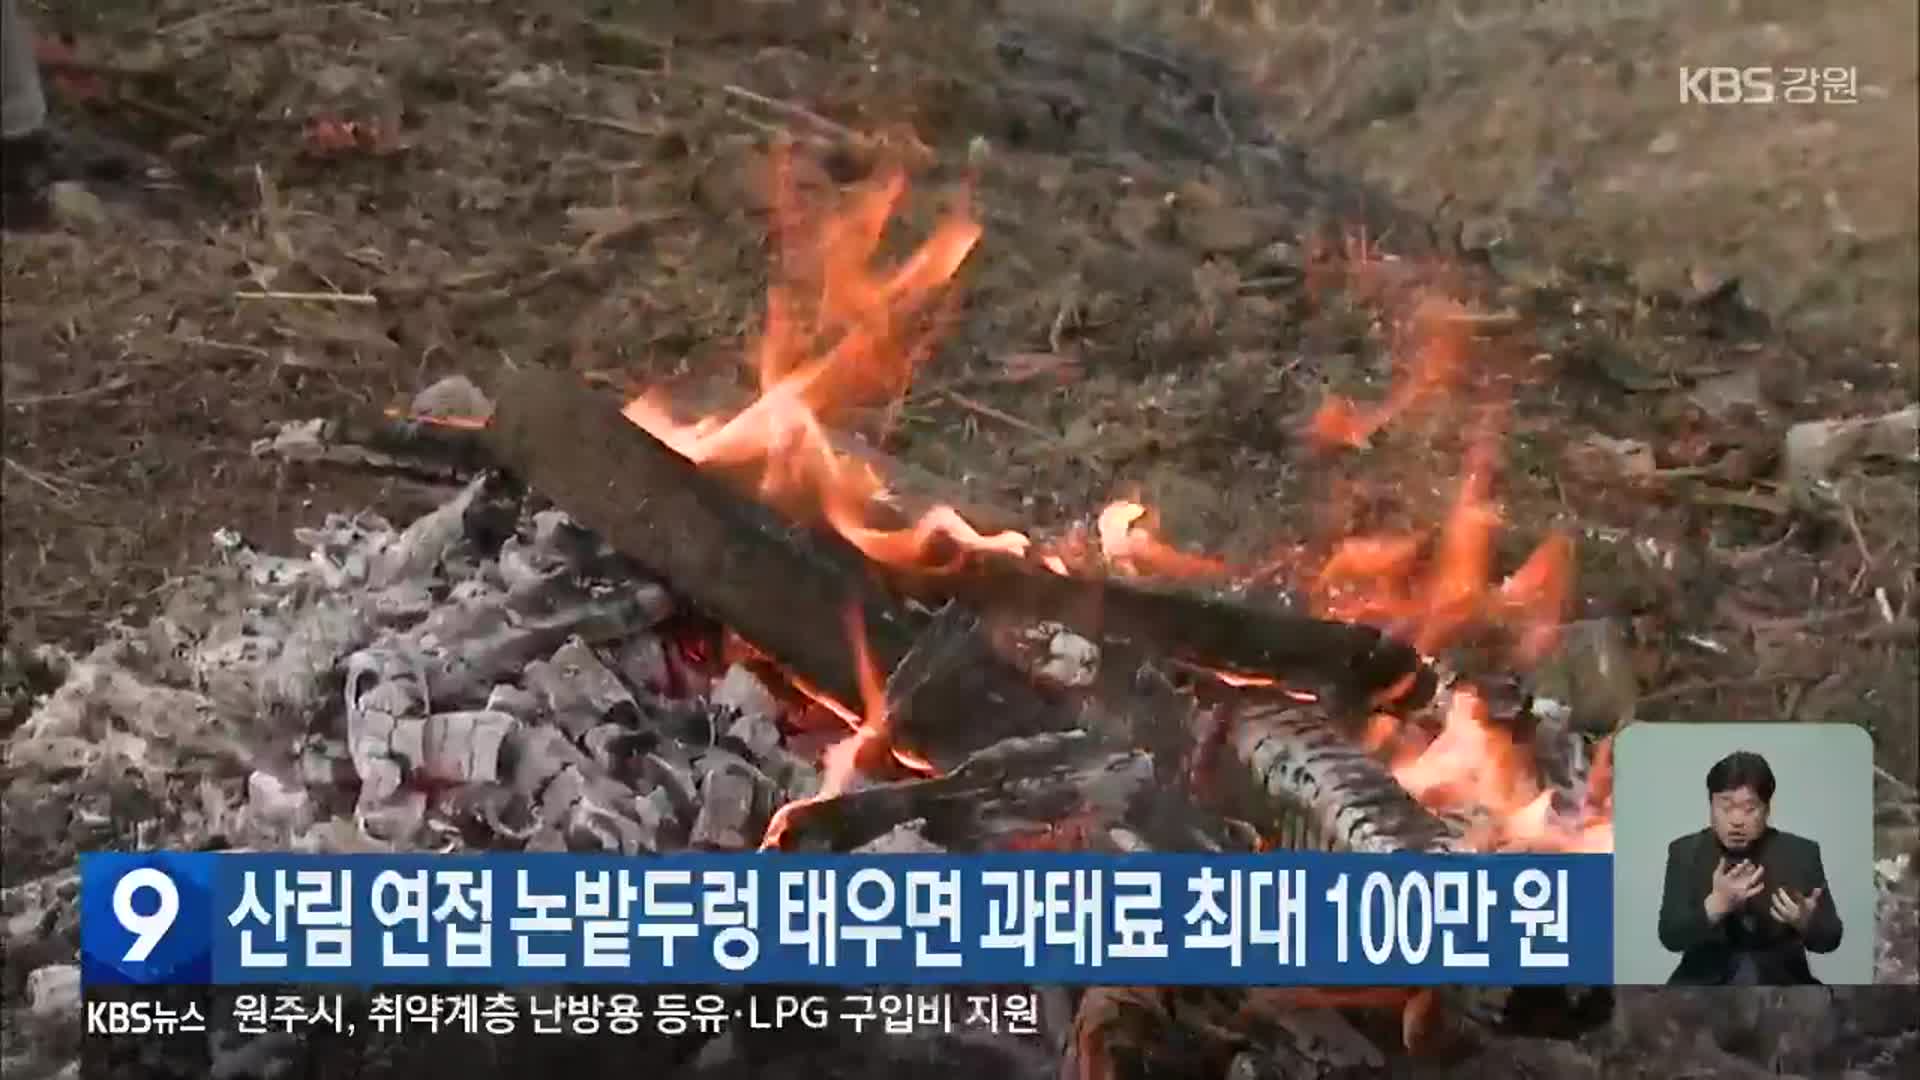 산림 연접 논밭두렁 태우면 과태료 최대 100만 원